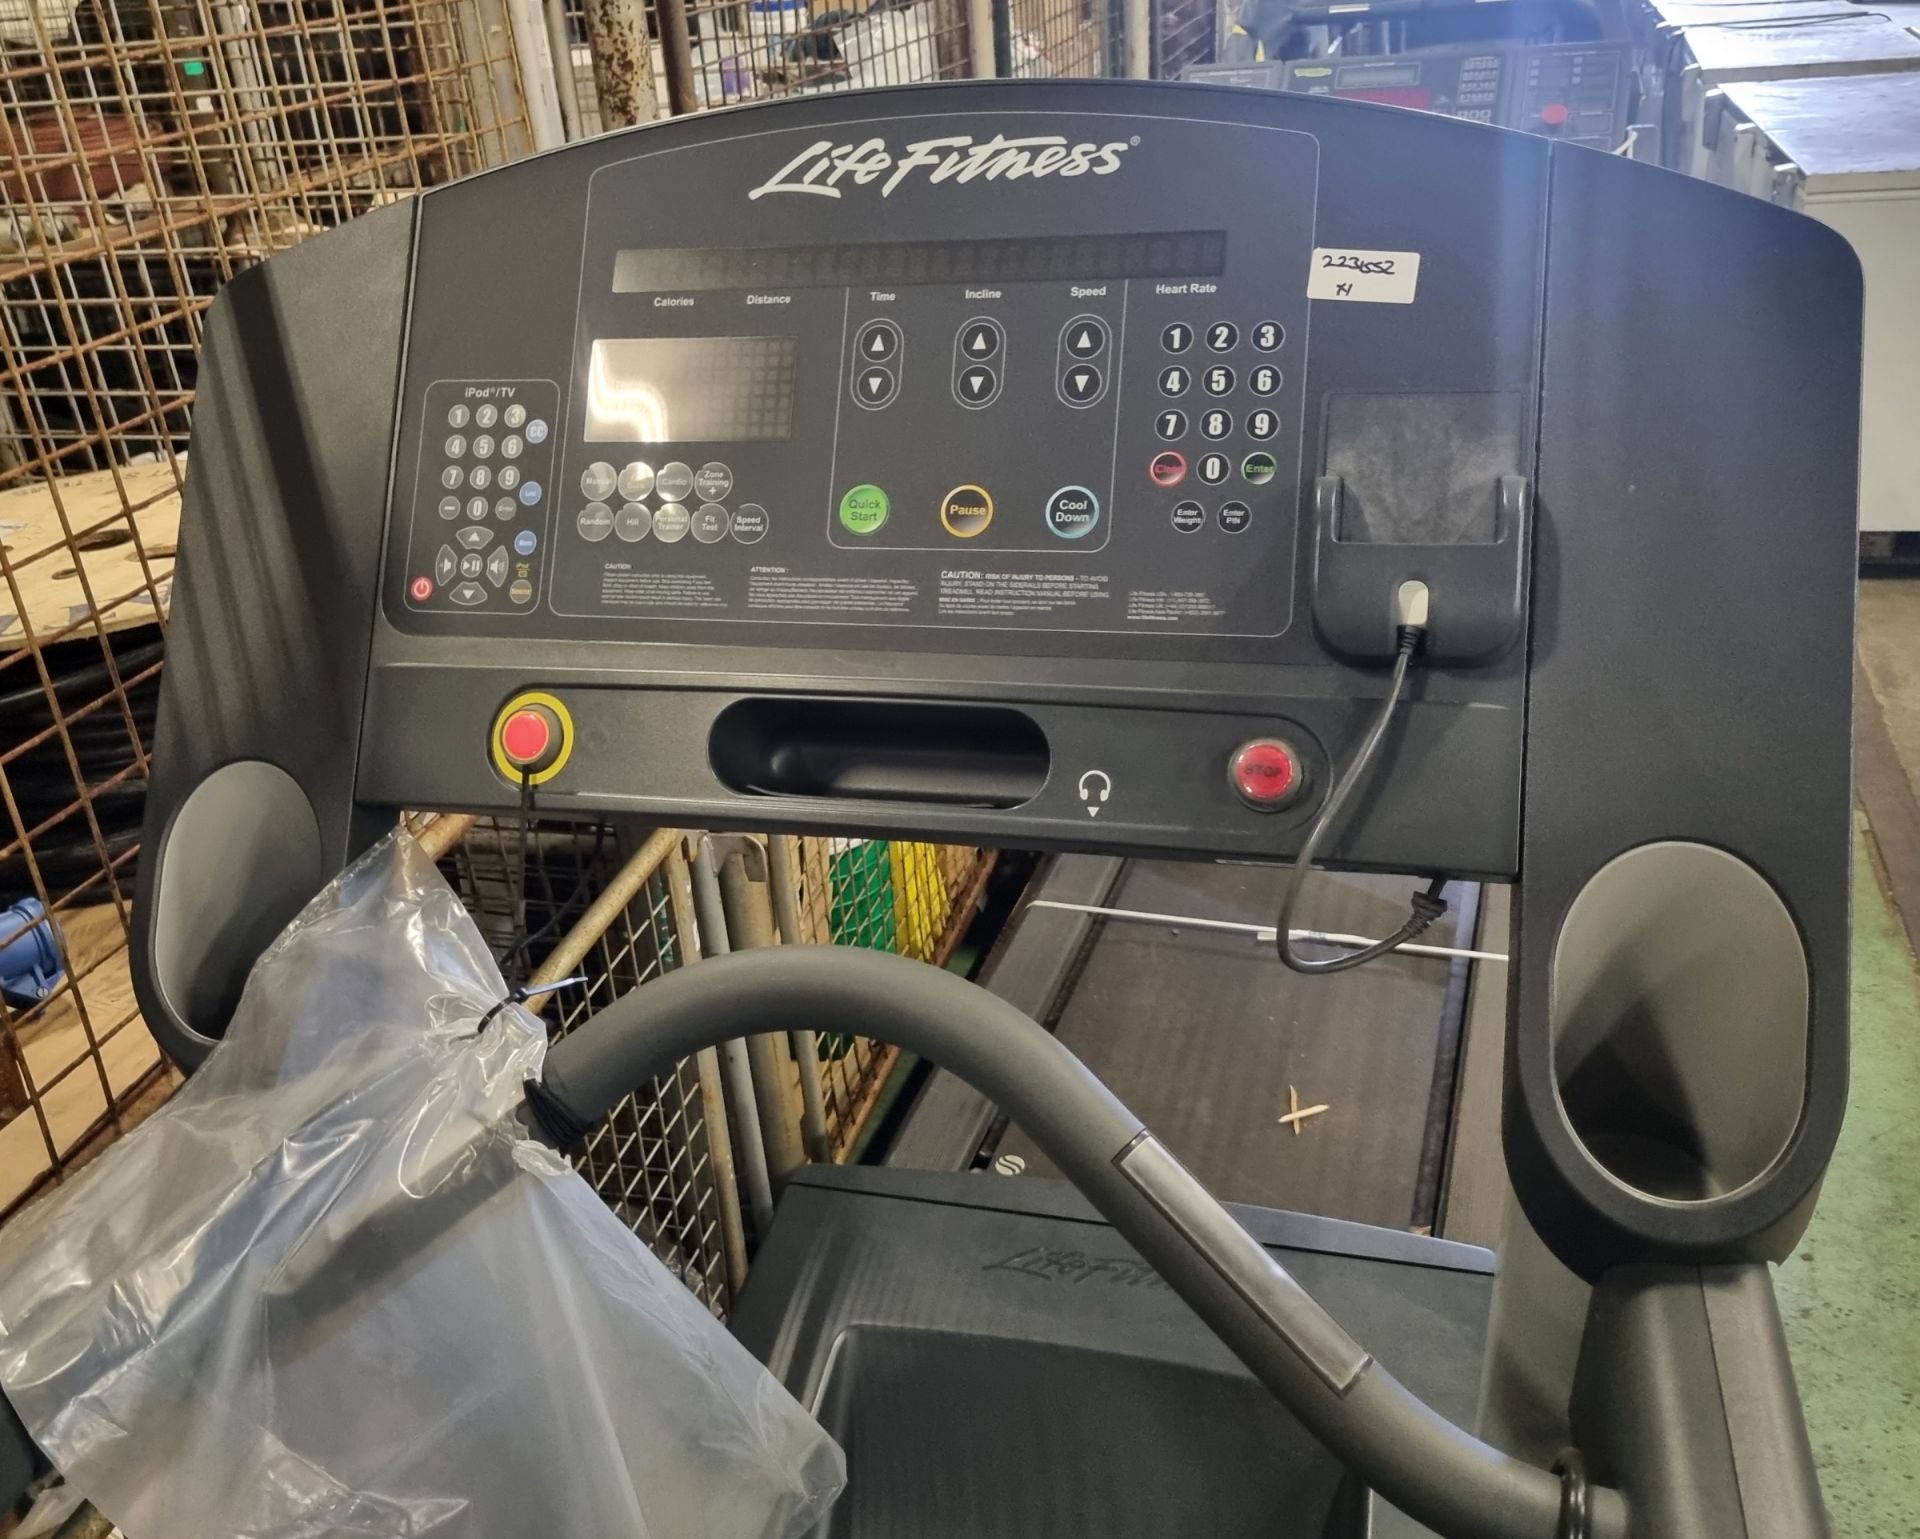 Life Fitness Flexdeck treadmill L 220 x W 90 x H 150 cm - Image 5 of 6